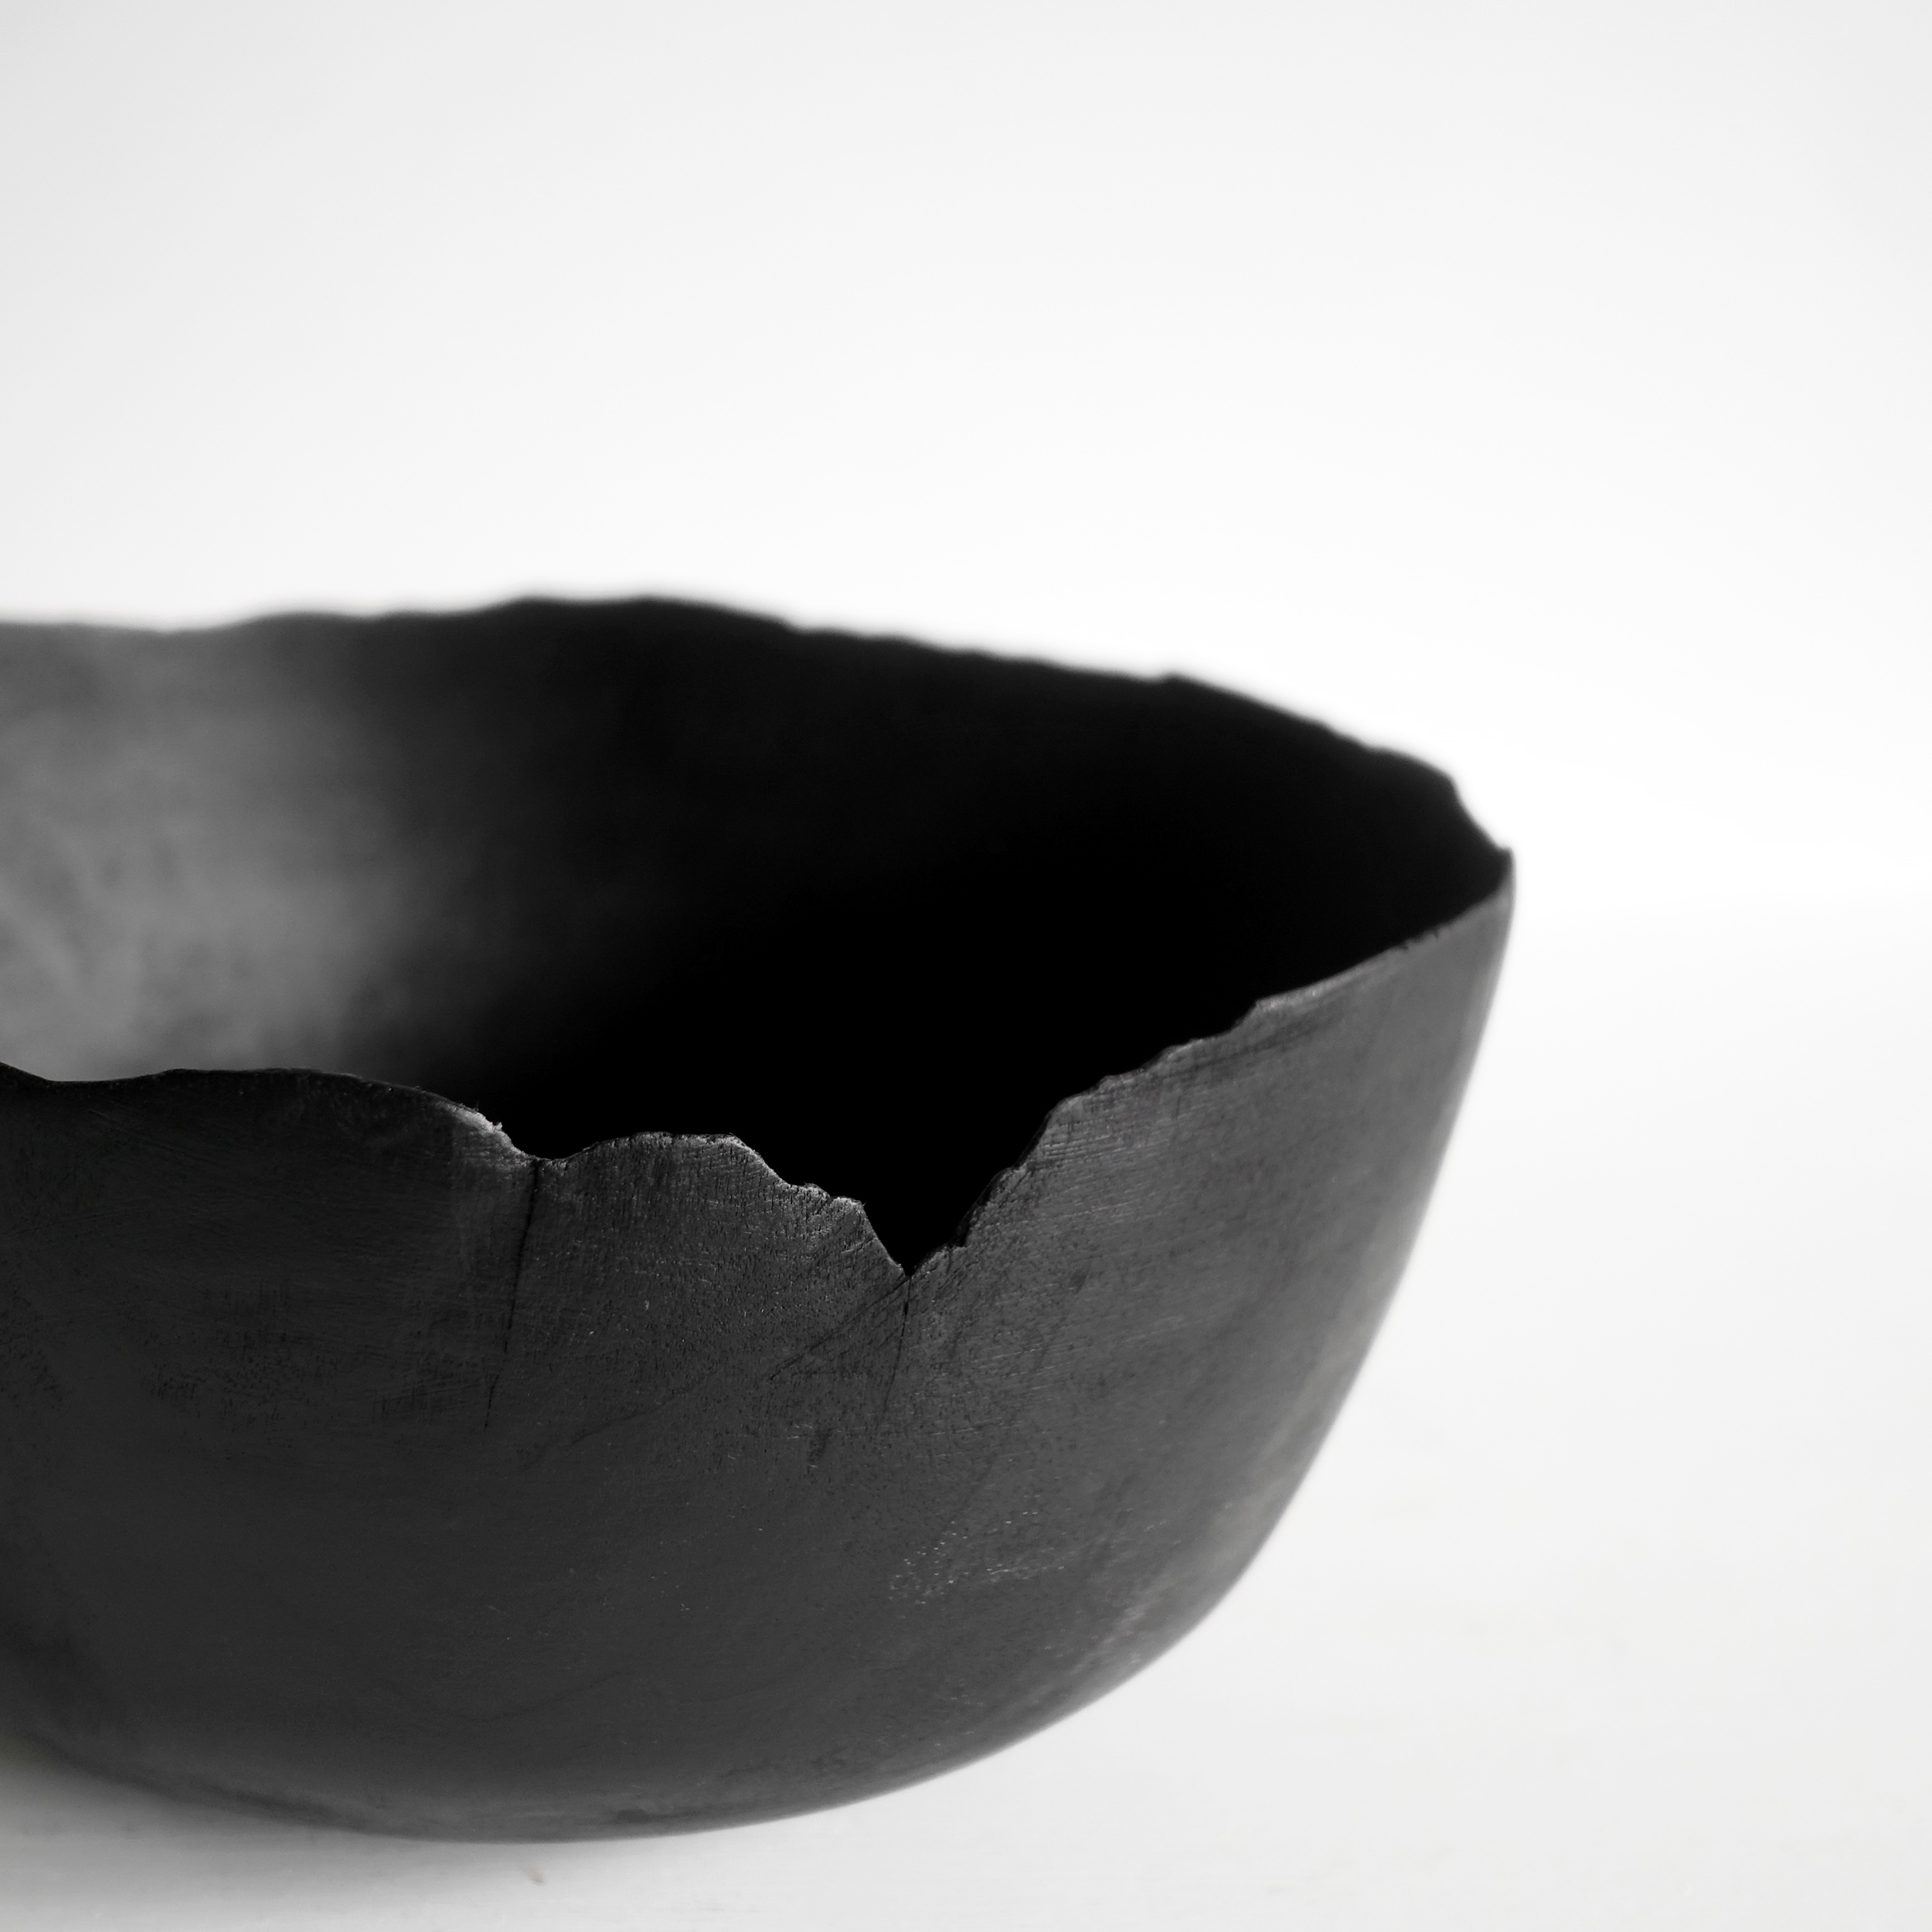 Thin black bowl 4